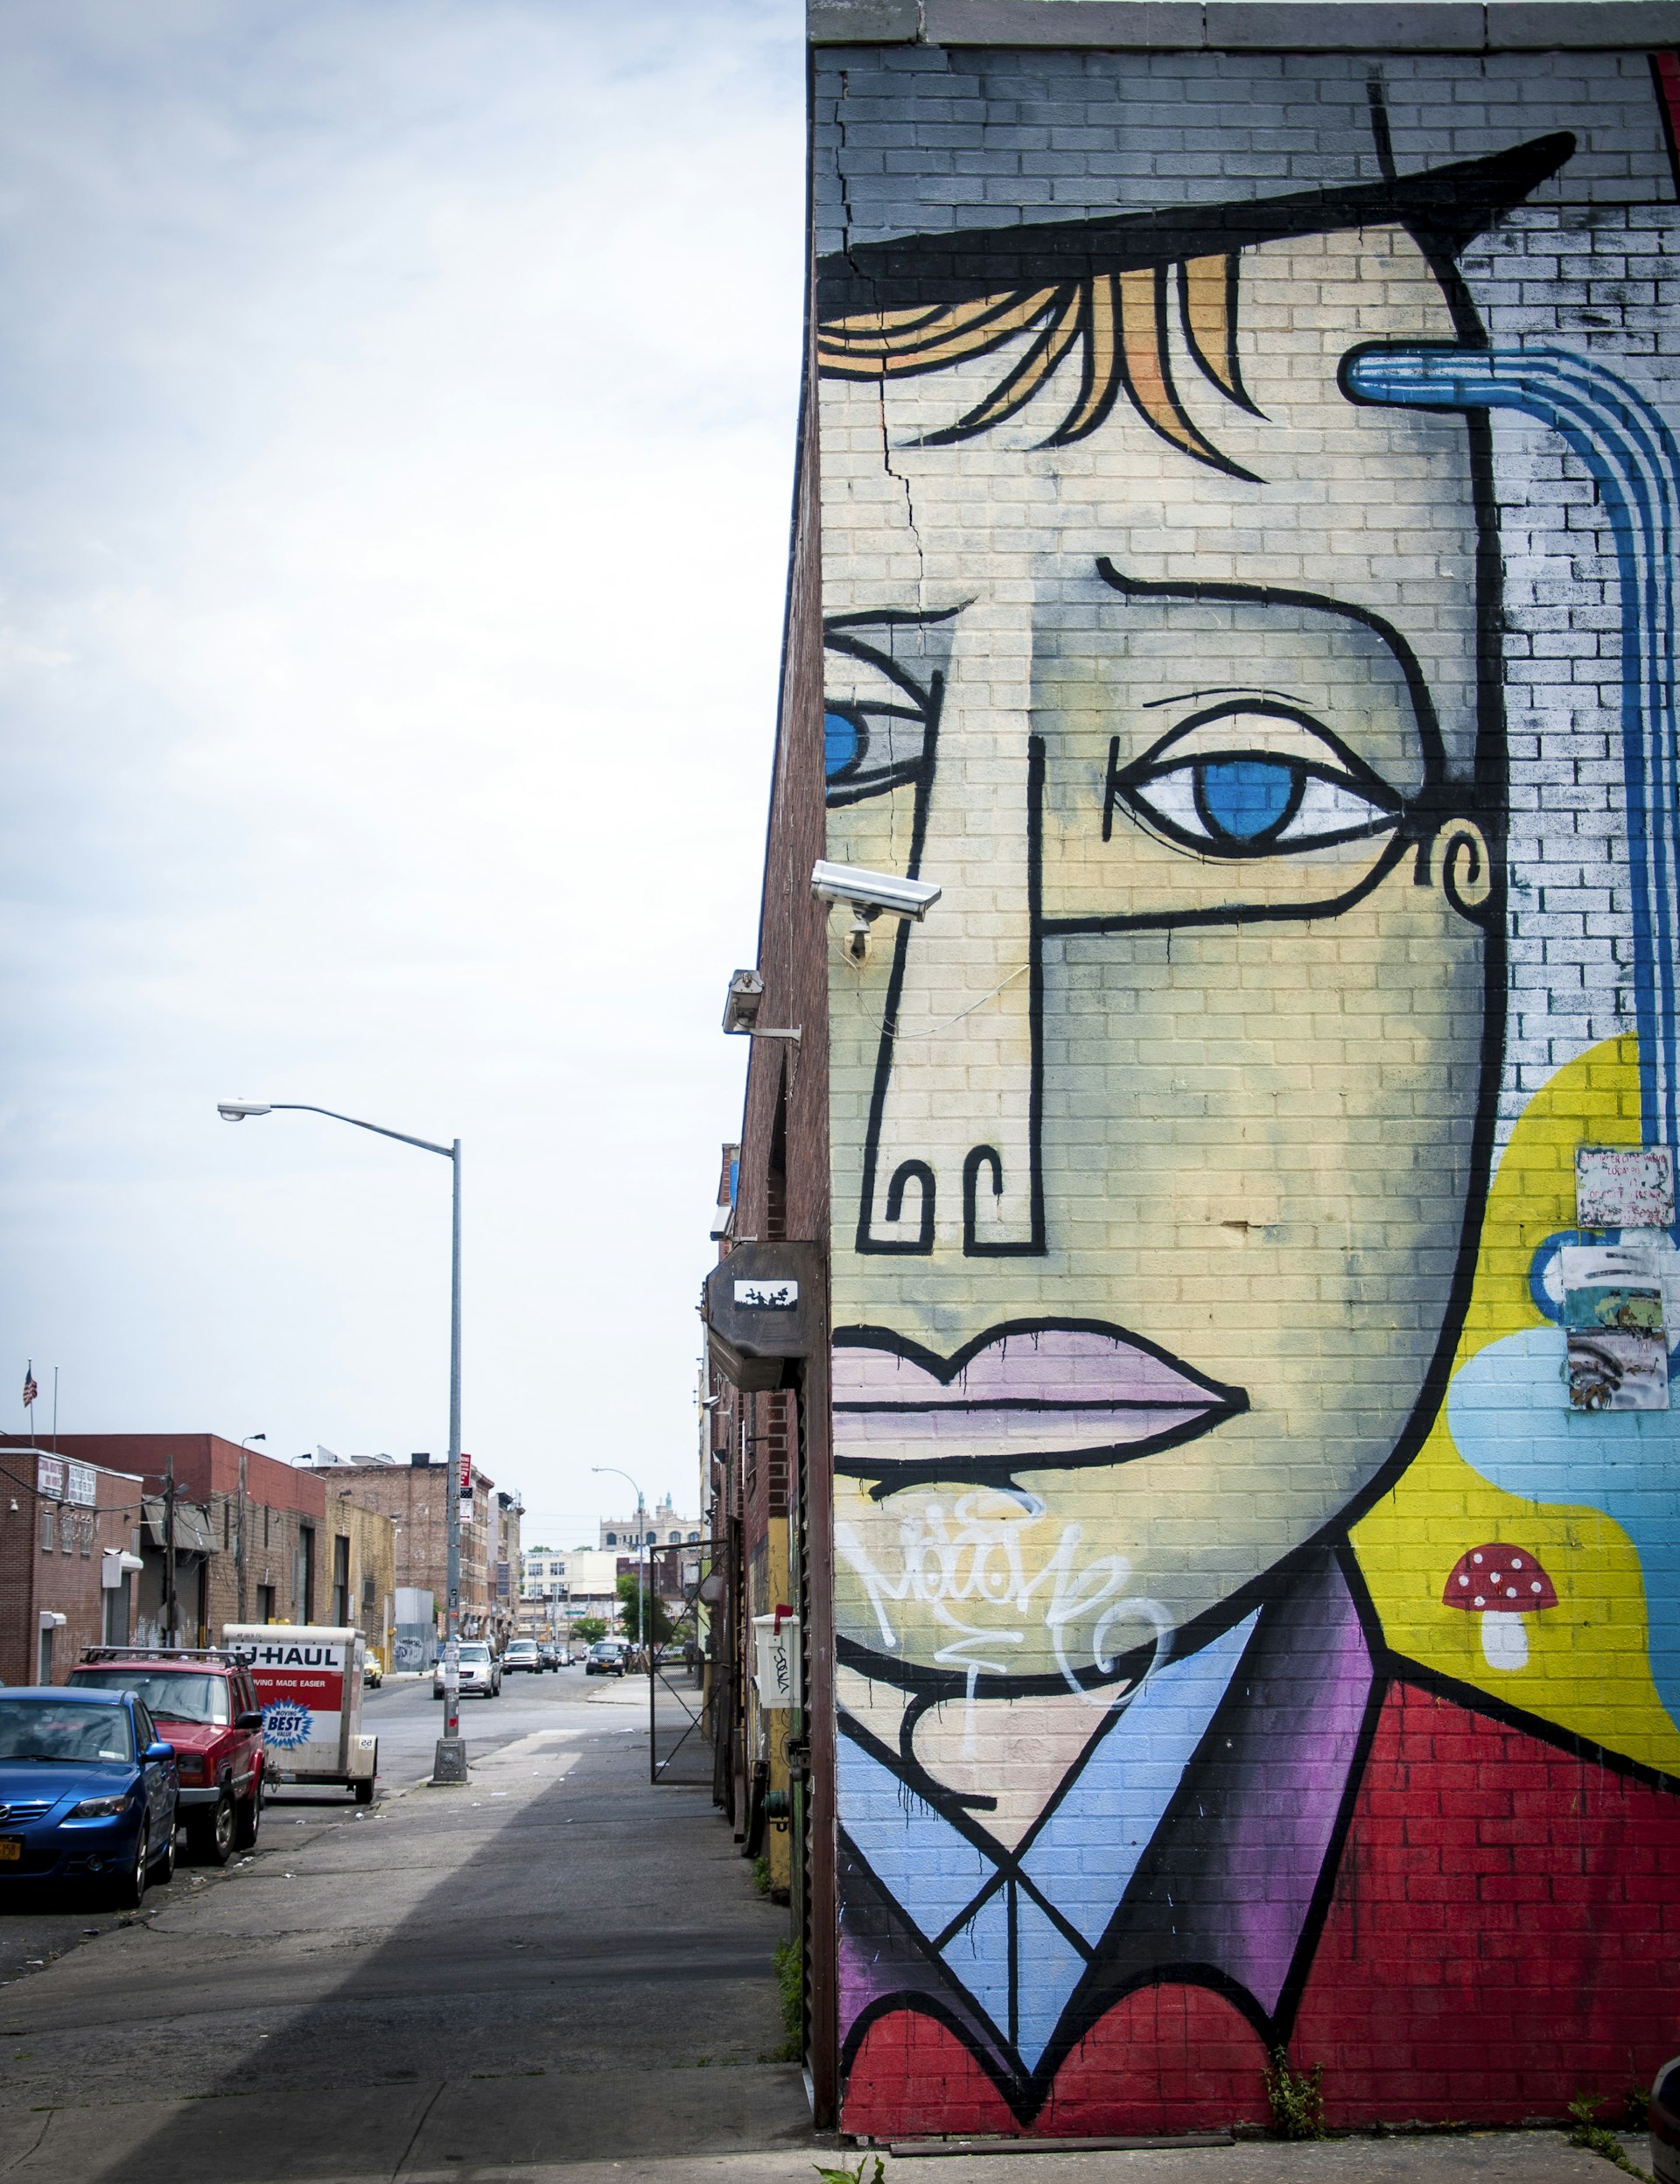 Street art in Williamsburg, Brooklyn